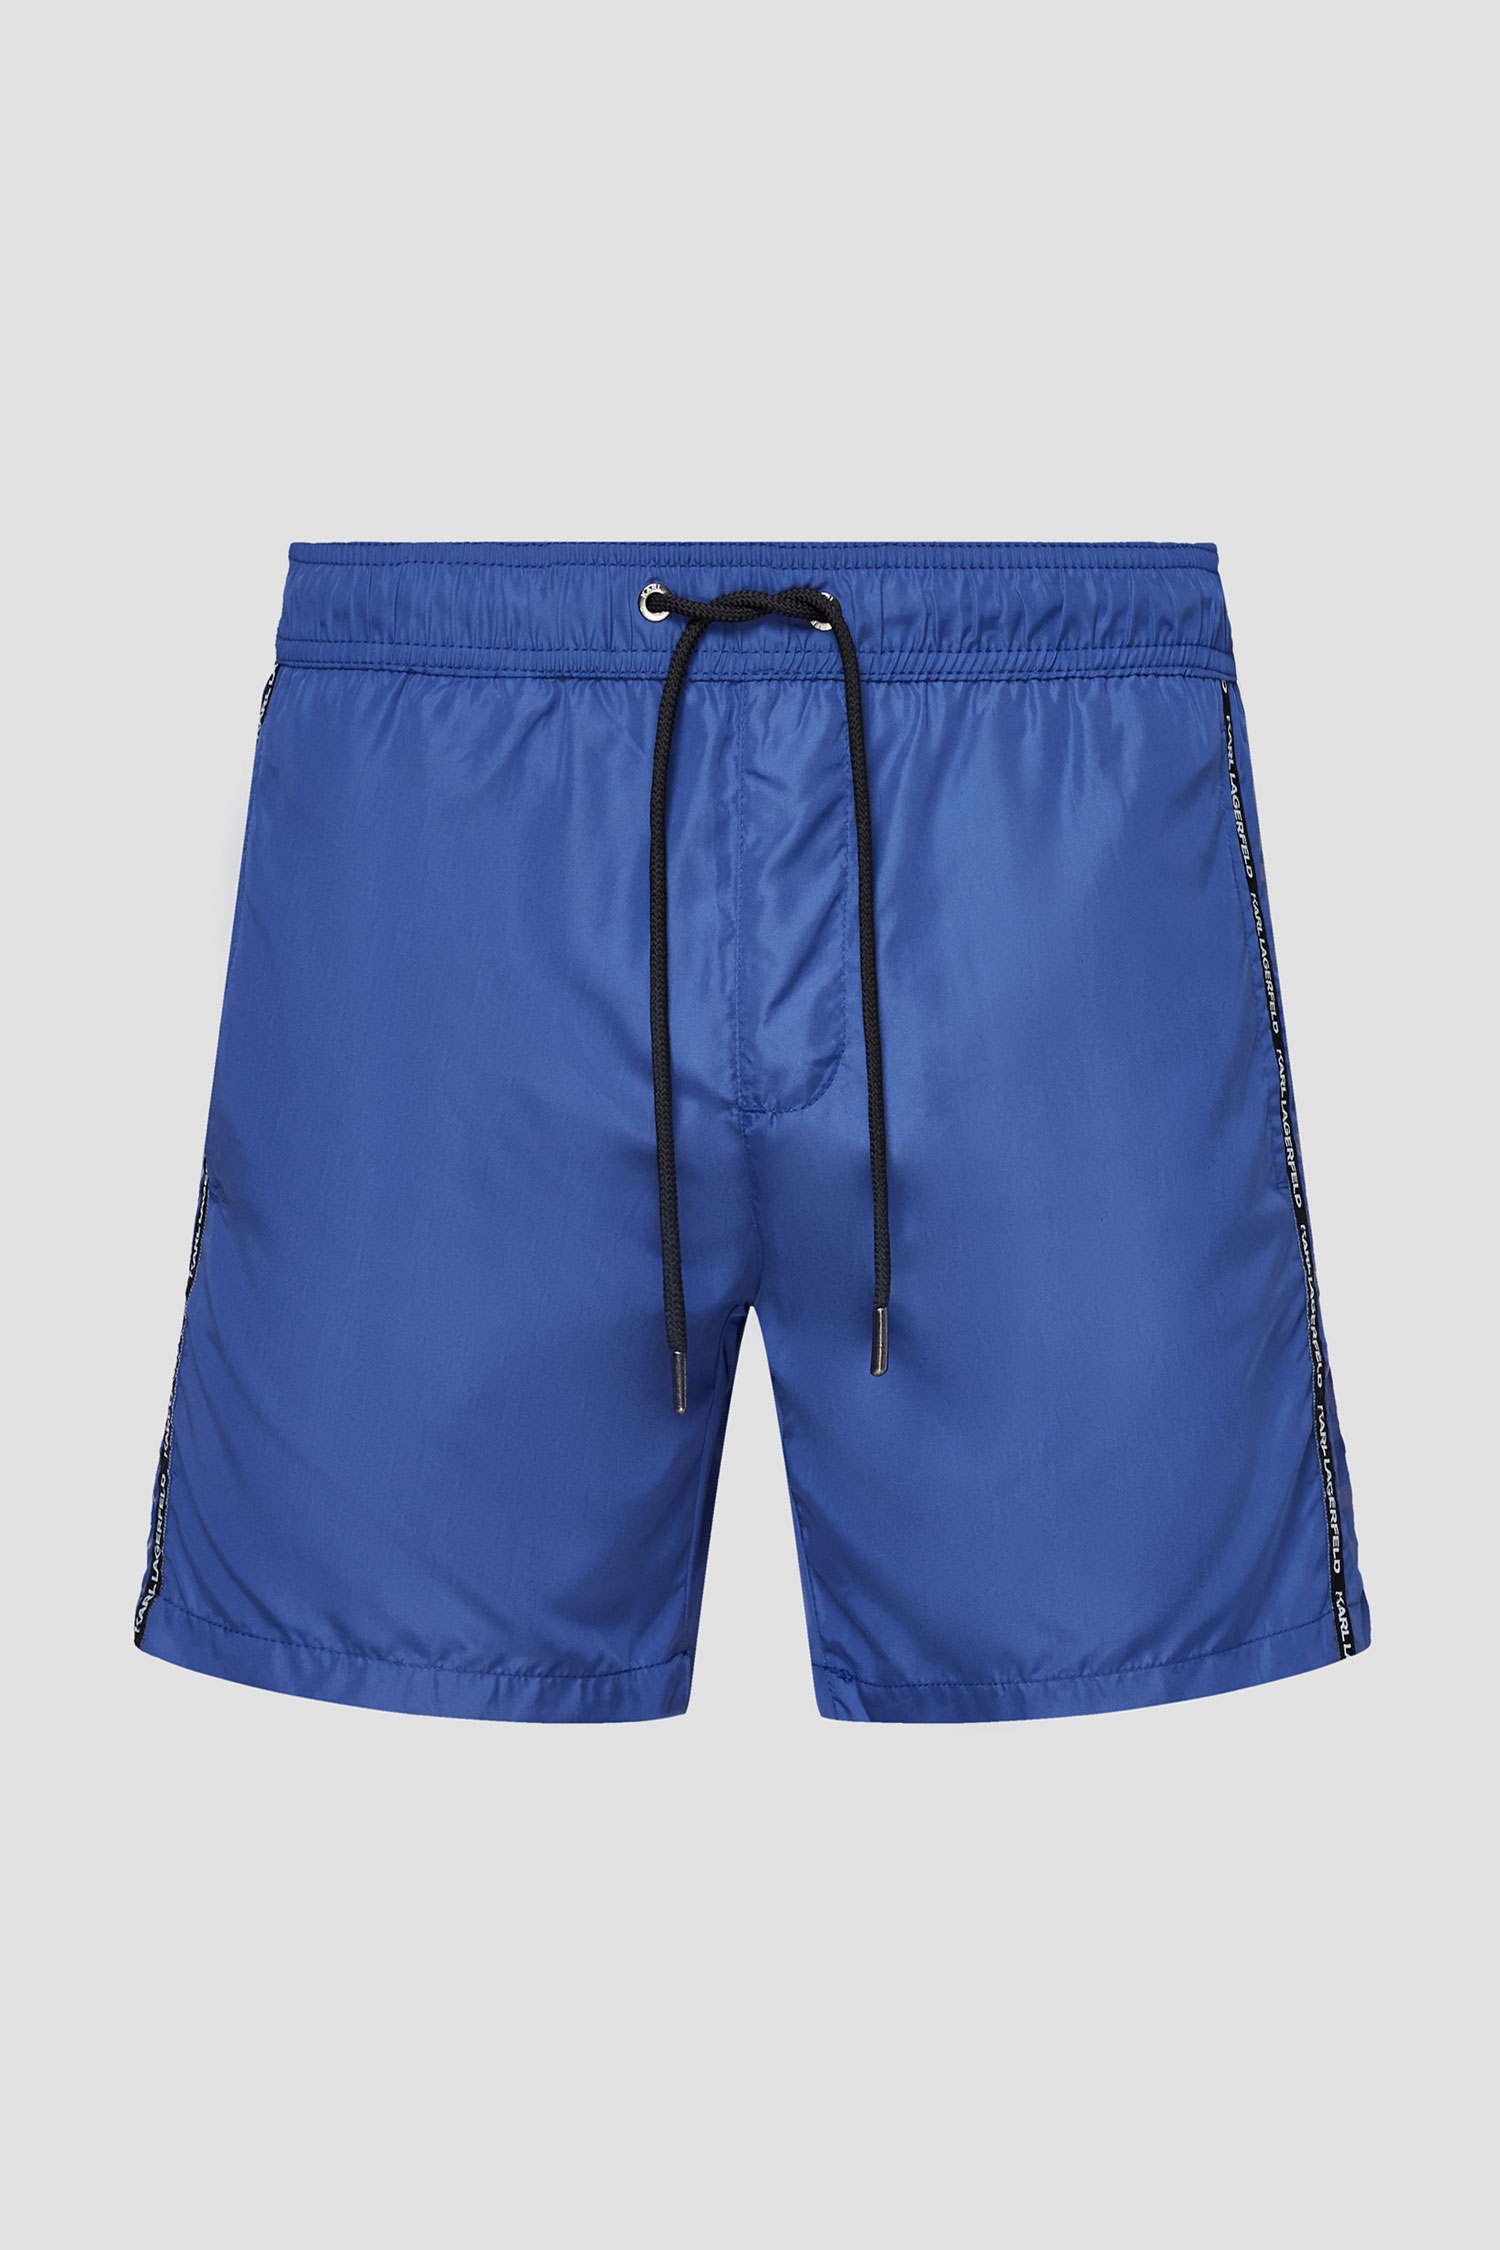 Чоловічі сині плавальні шорти Karl Lagerfeld KL21MBM03;NAVY